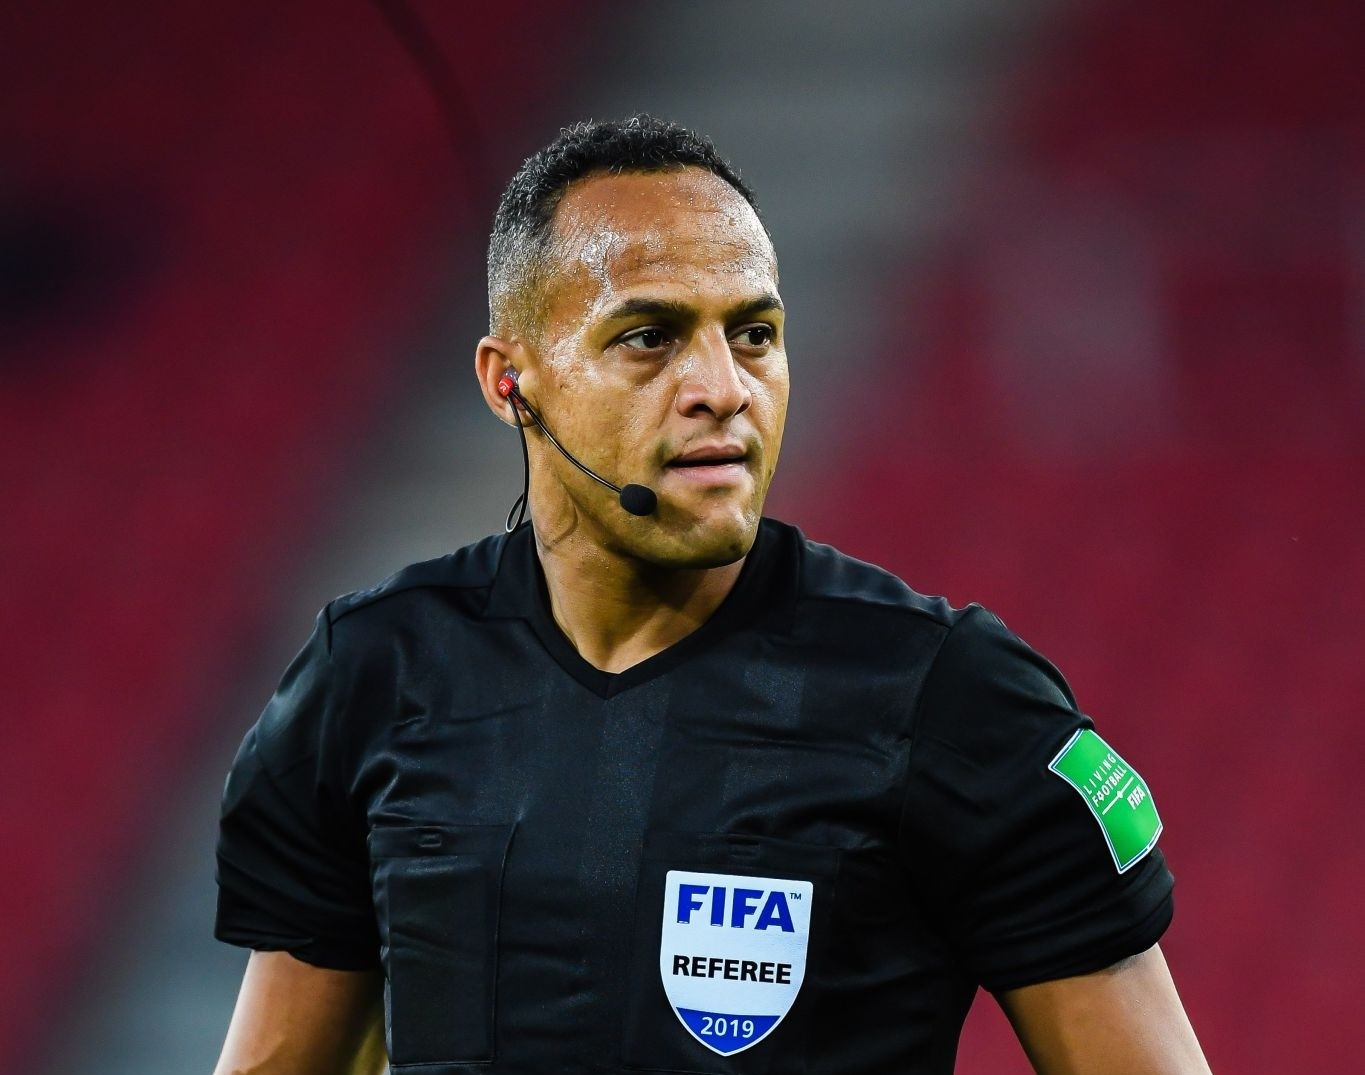 FIFA referee Ismail Elfath